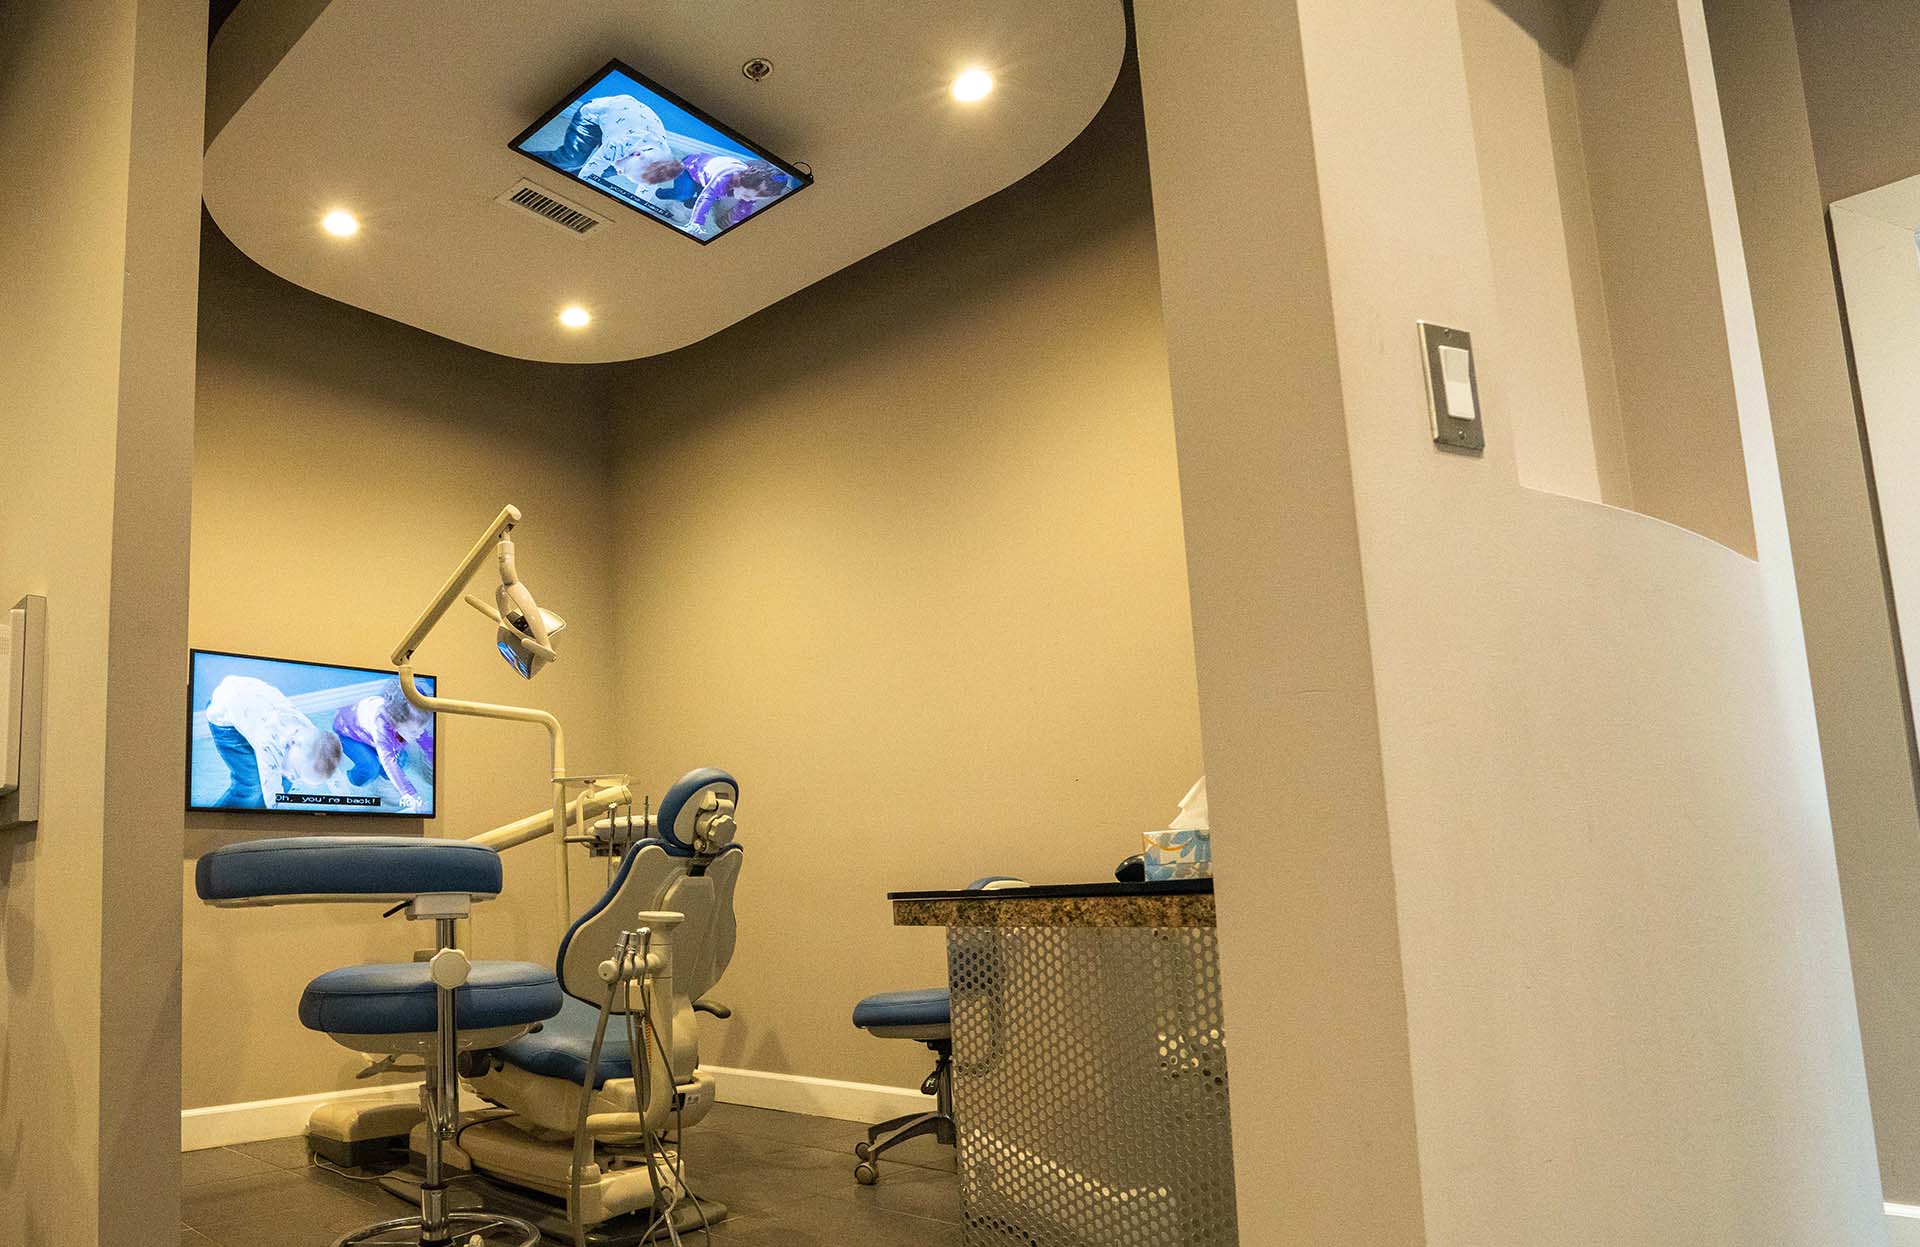 millwoods dental clinic chair